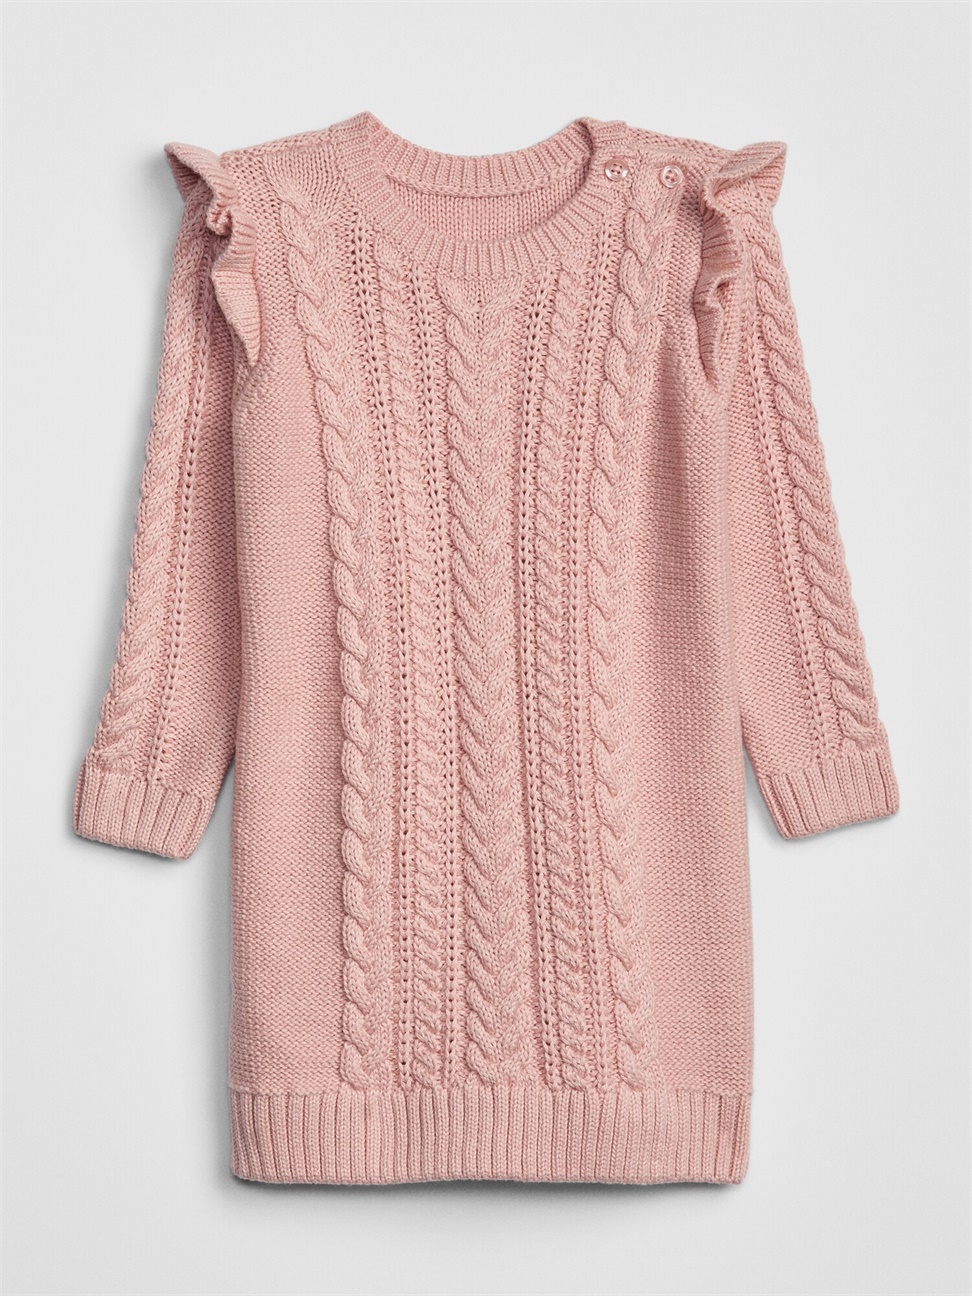 嬰兒裝|荷葉邊長袖針織洋裝-粉色